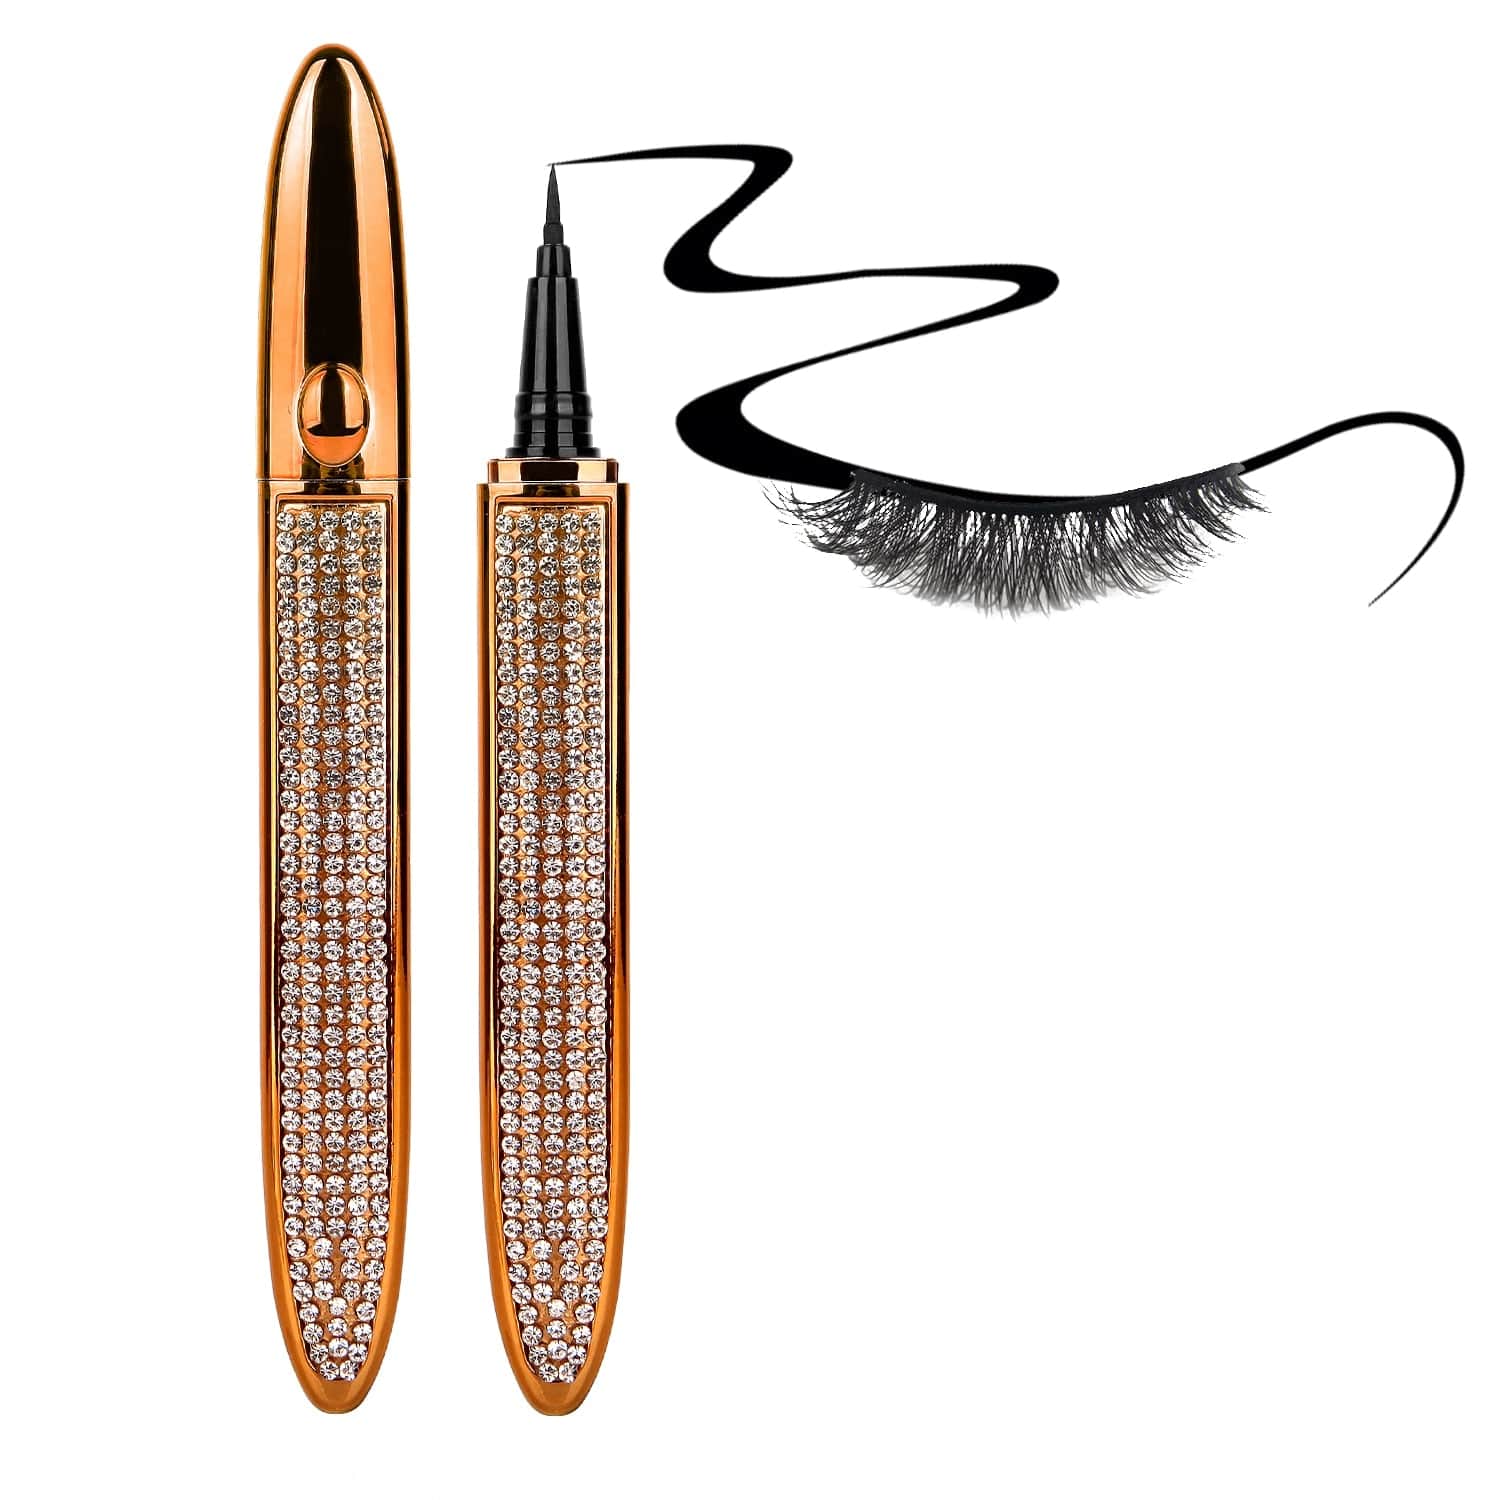 Magic Long-Lasting Eyelash Adhesive and Eyeliner Foolproof Application Pencil